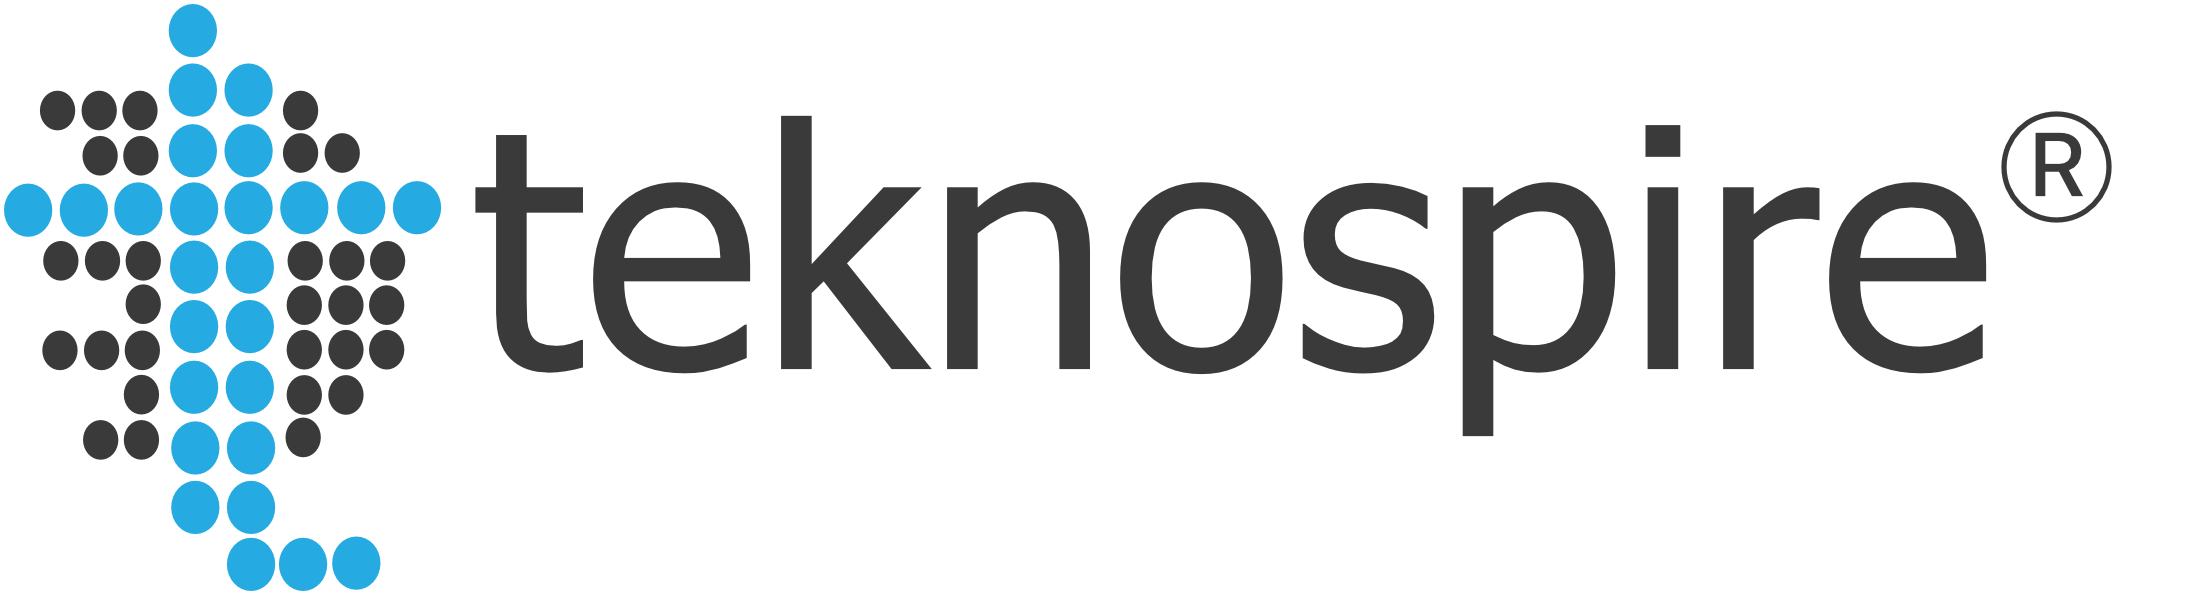 Teknospire Logo Registered